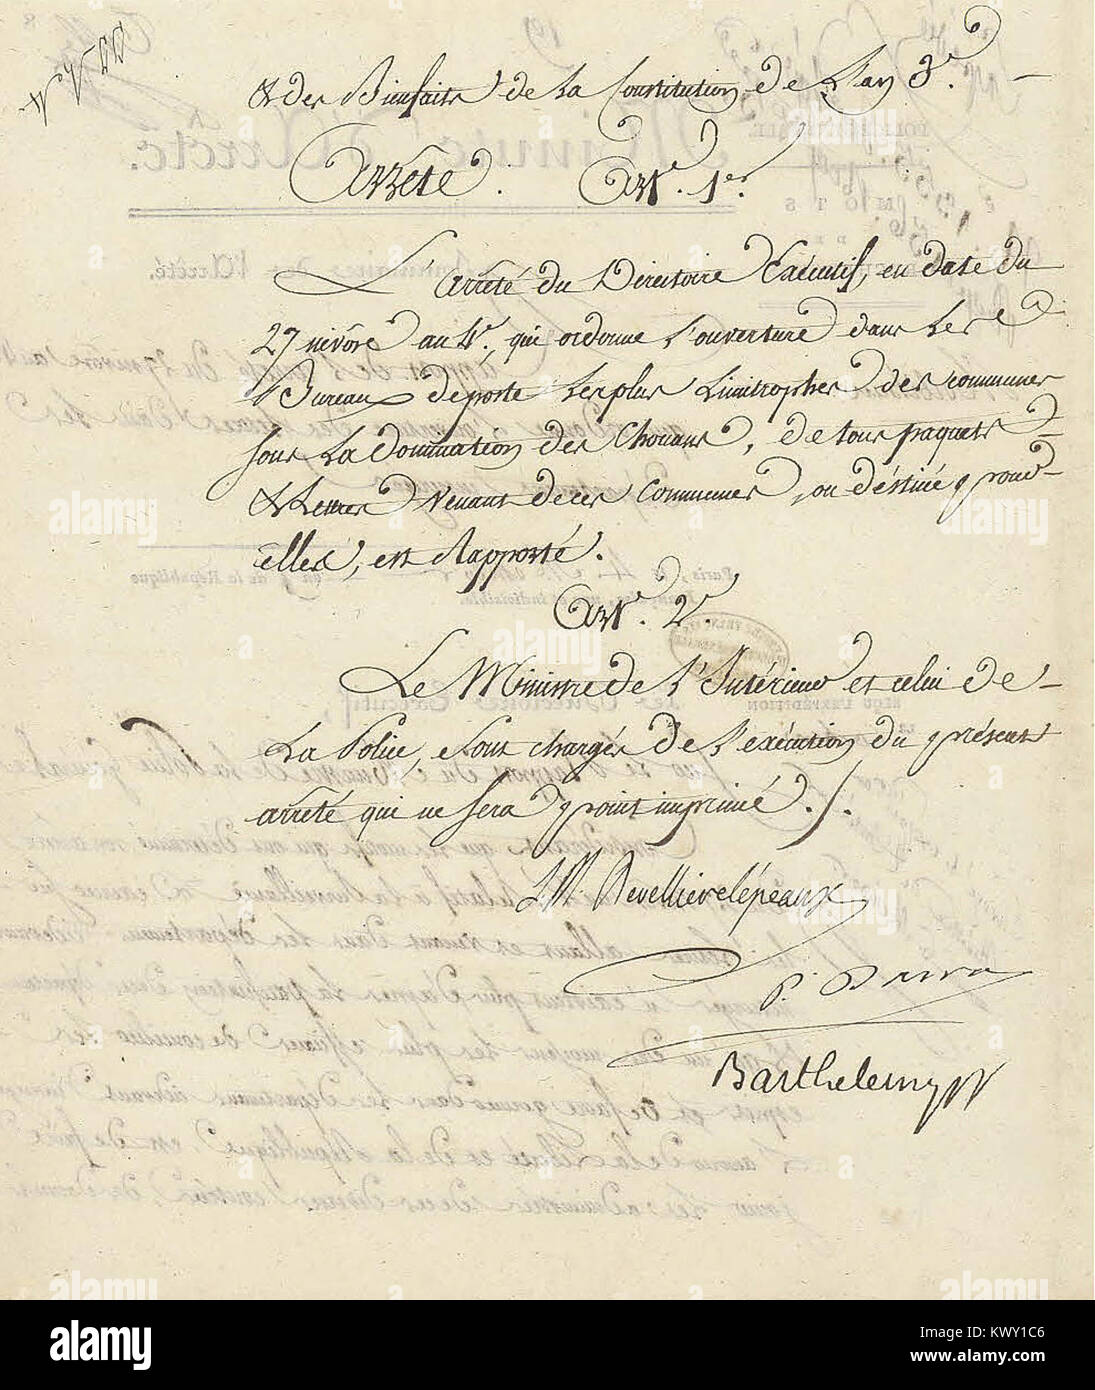 Minute d’arrêté du Directoire exécutif rapportant un arrêté du 27 nivôse an IV (17 janvier 1796) - Archives Nationales - AF-III-454 - (2) Stock Photo